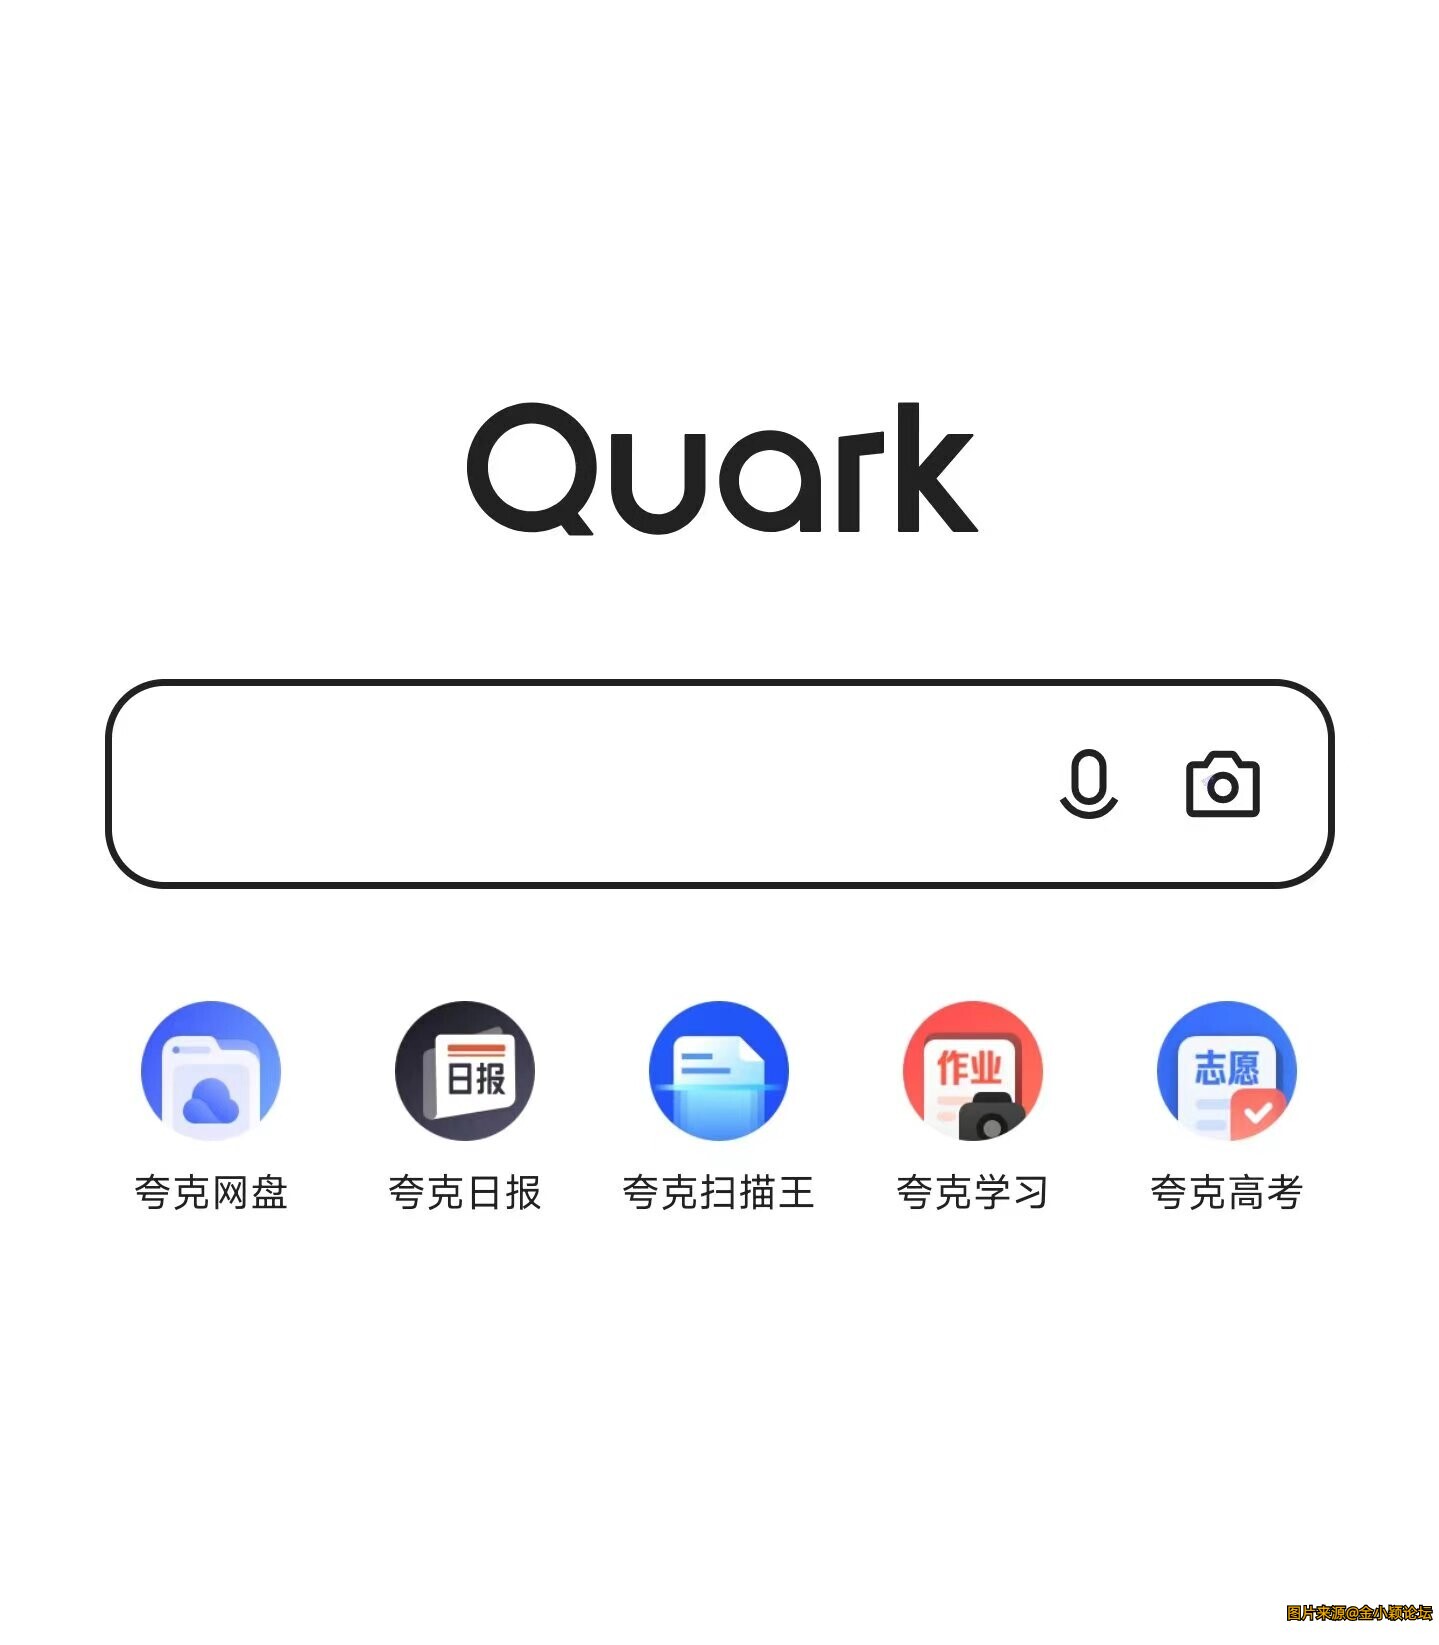 夸克浏览器 完美版，什么都可以进的浏览器。